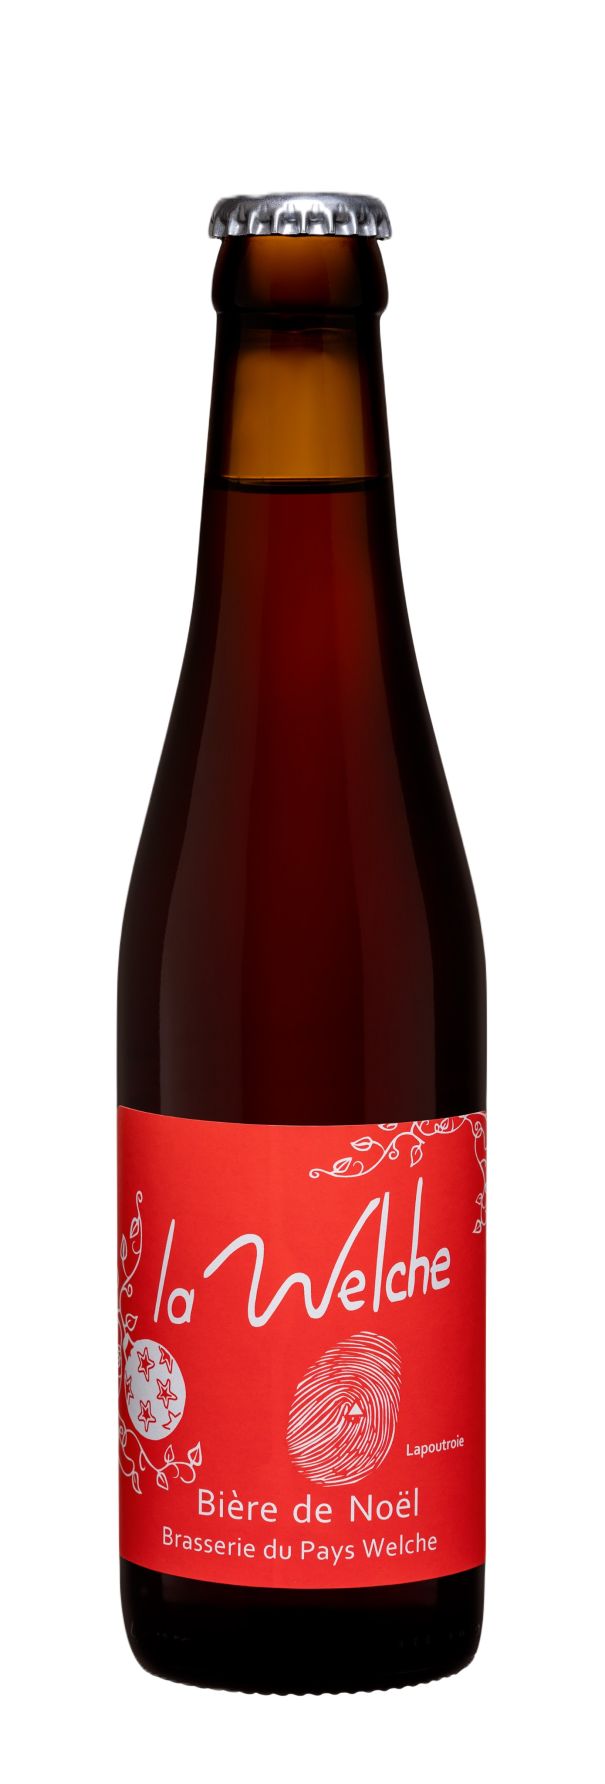 L'Orhinoise - Bière de Noël - Alsace Saveurs